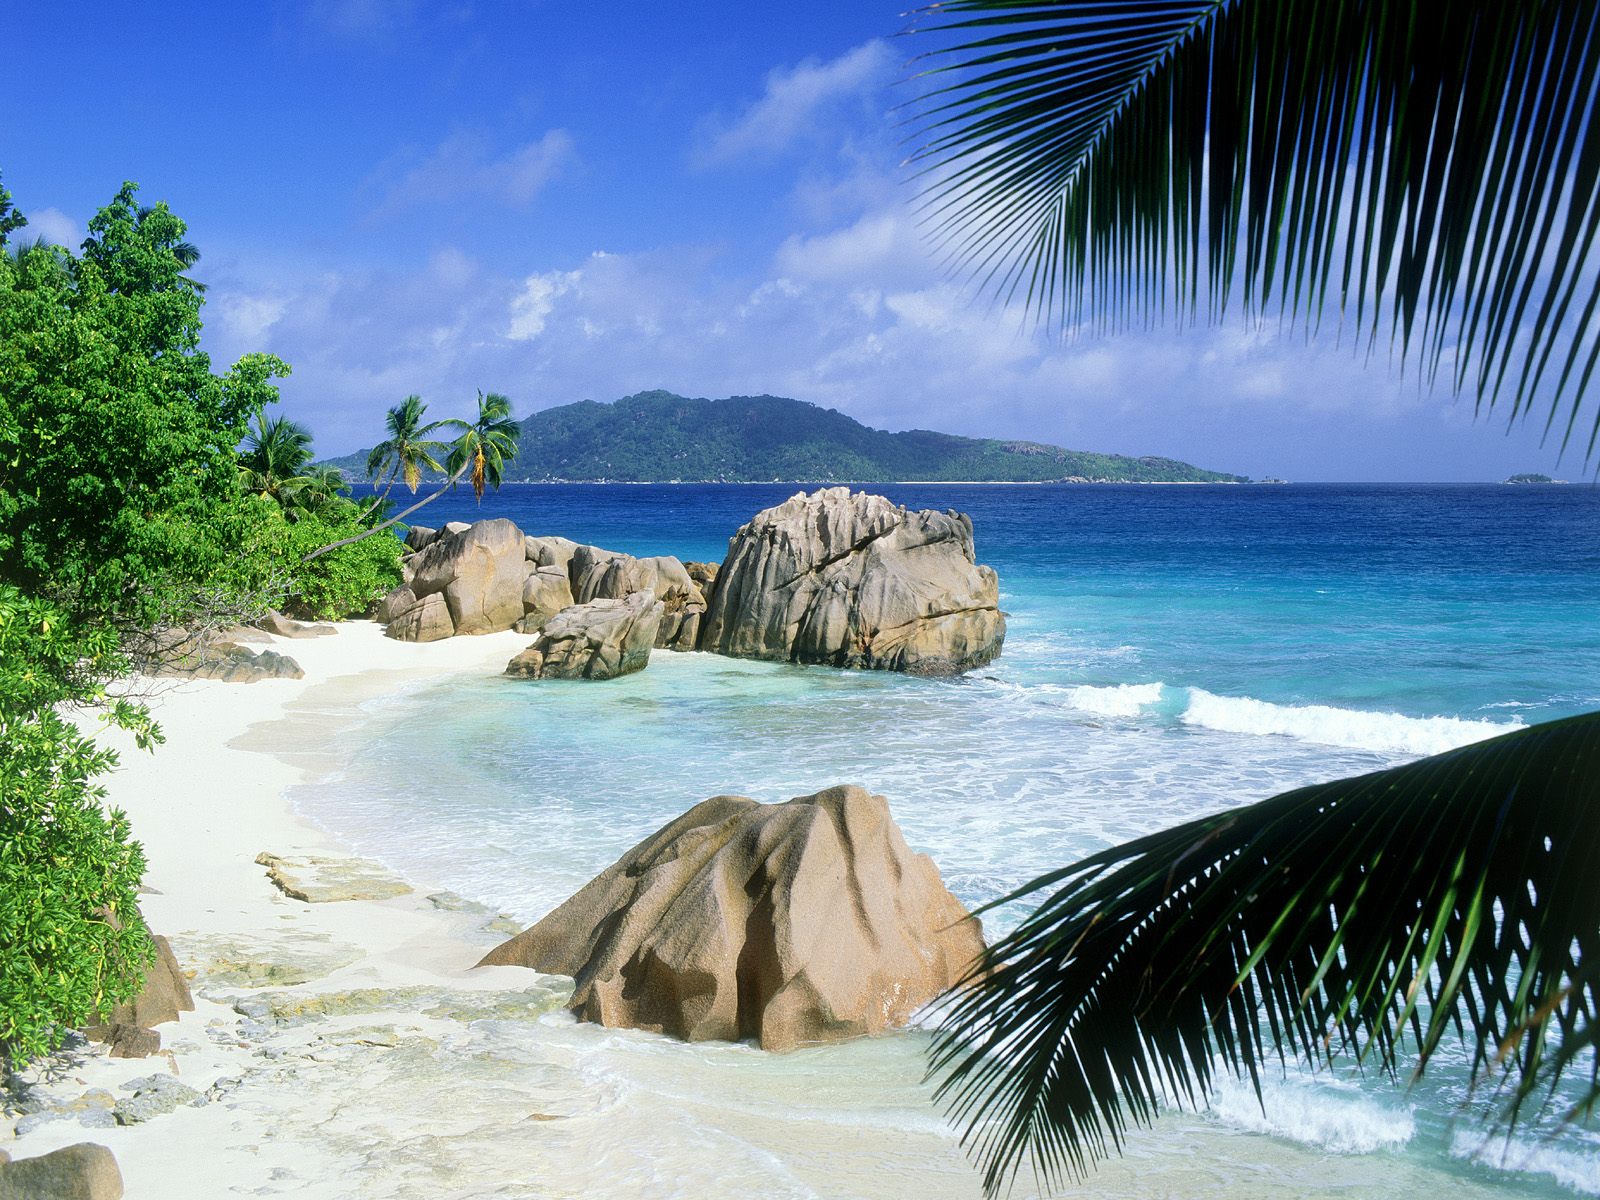 http://2.bp.blogspot.com/-mKeMMT80A5E/TwE-fZTChuI/AAAAAAAABZQ/AhDSlgNd-QA/s1600/Anse+Patate%252C+La+Digue%252C+Seychelles.jpg